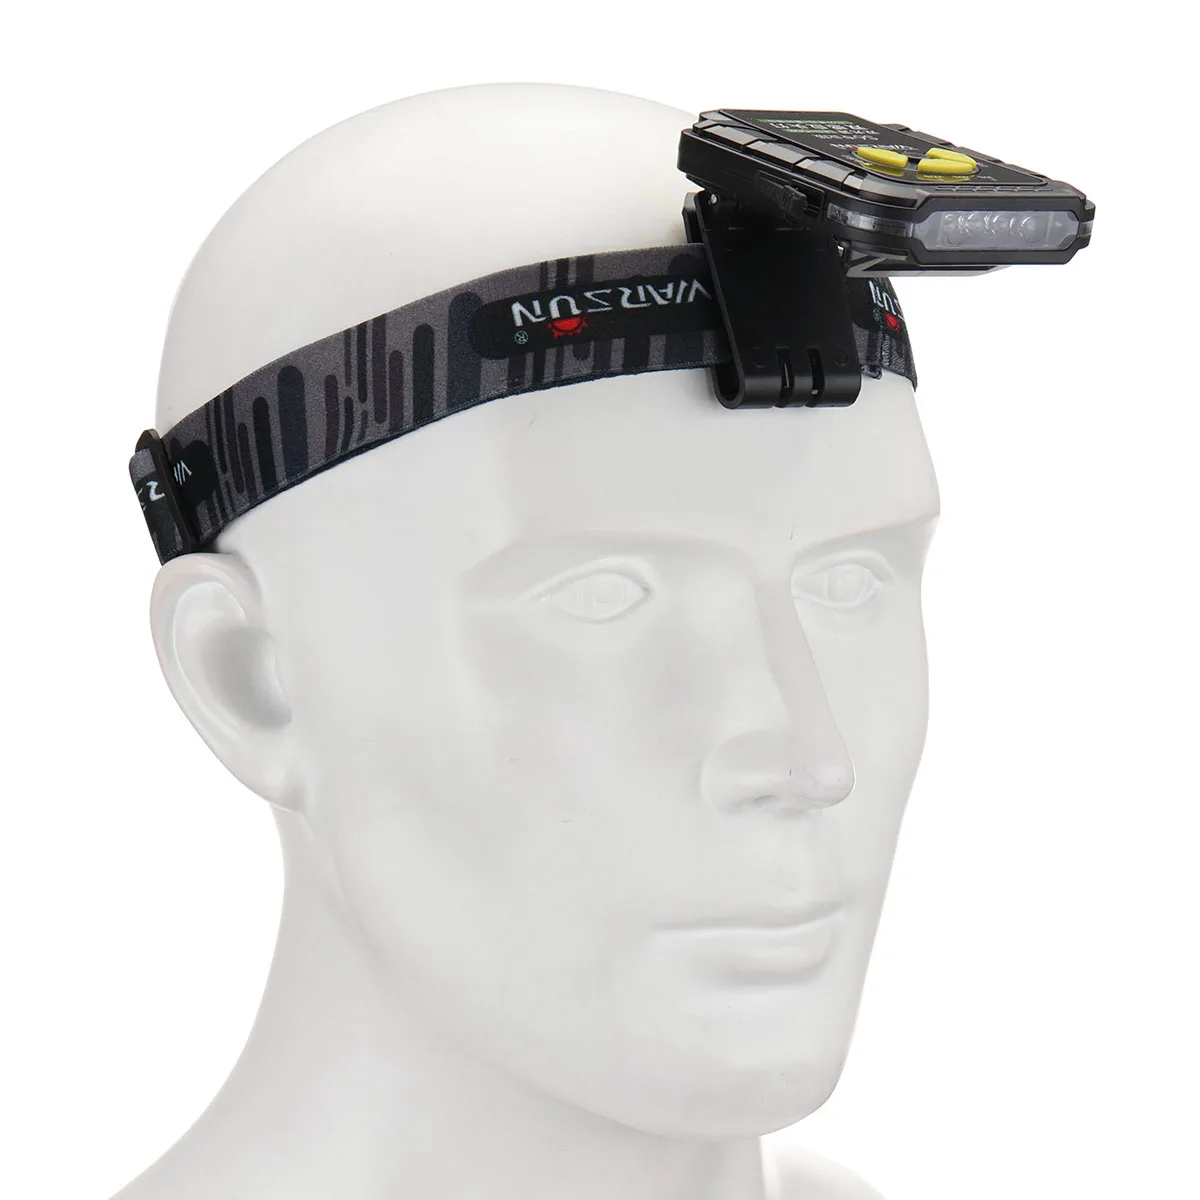 USB Перезаряжаемый головной светильник IR Motion Shock sensor светодиодный+ COB колпачок с клипсой на голову светильник IPX6 Панама, шапка для рыбалки фонарь вспышка светильник с